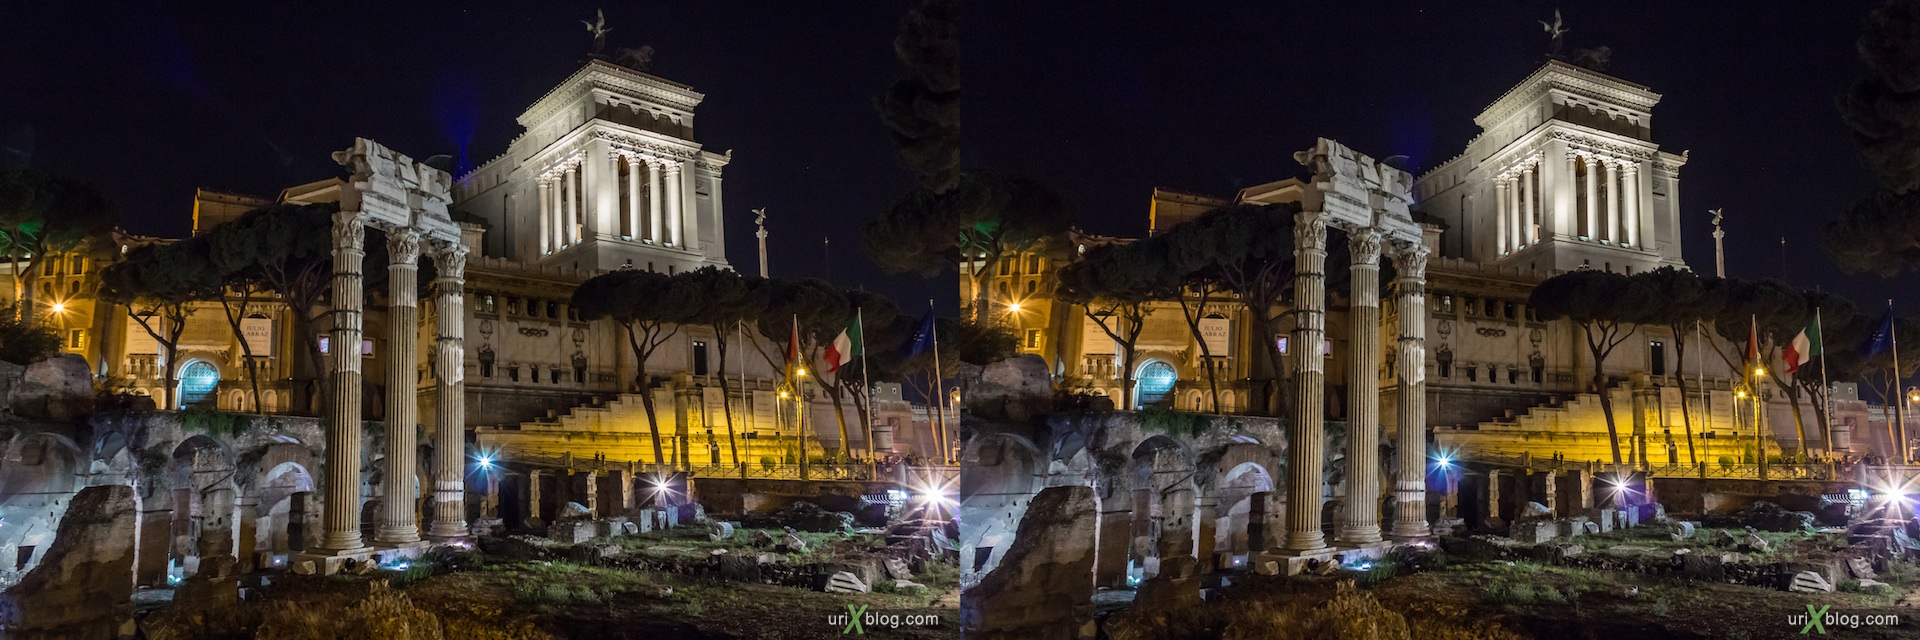 2012, Римский форум, Палатинский холм, город, раскопки, древний Рим, Италия, 3D, перекрёстные стереопары, стерео, стереопара, стереопары